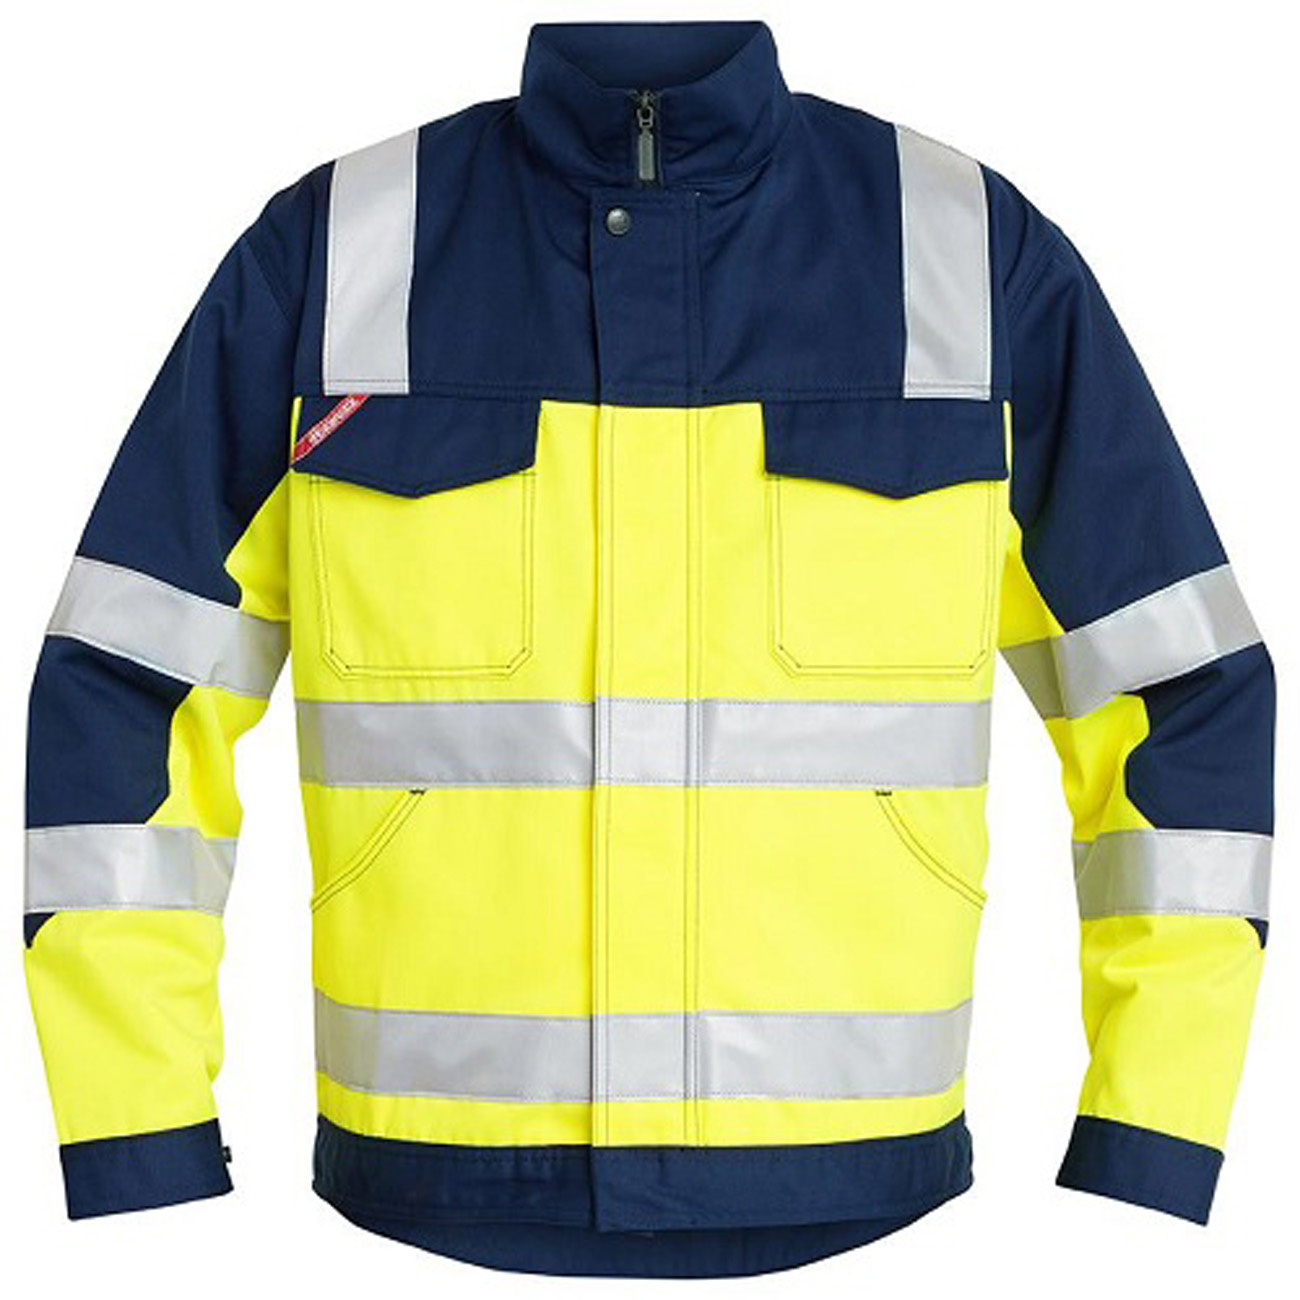 ENGEL Bundjacke Jacke Arbeitsjacke Warnschutzjacke gelb/marine Nr. 1601-420